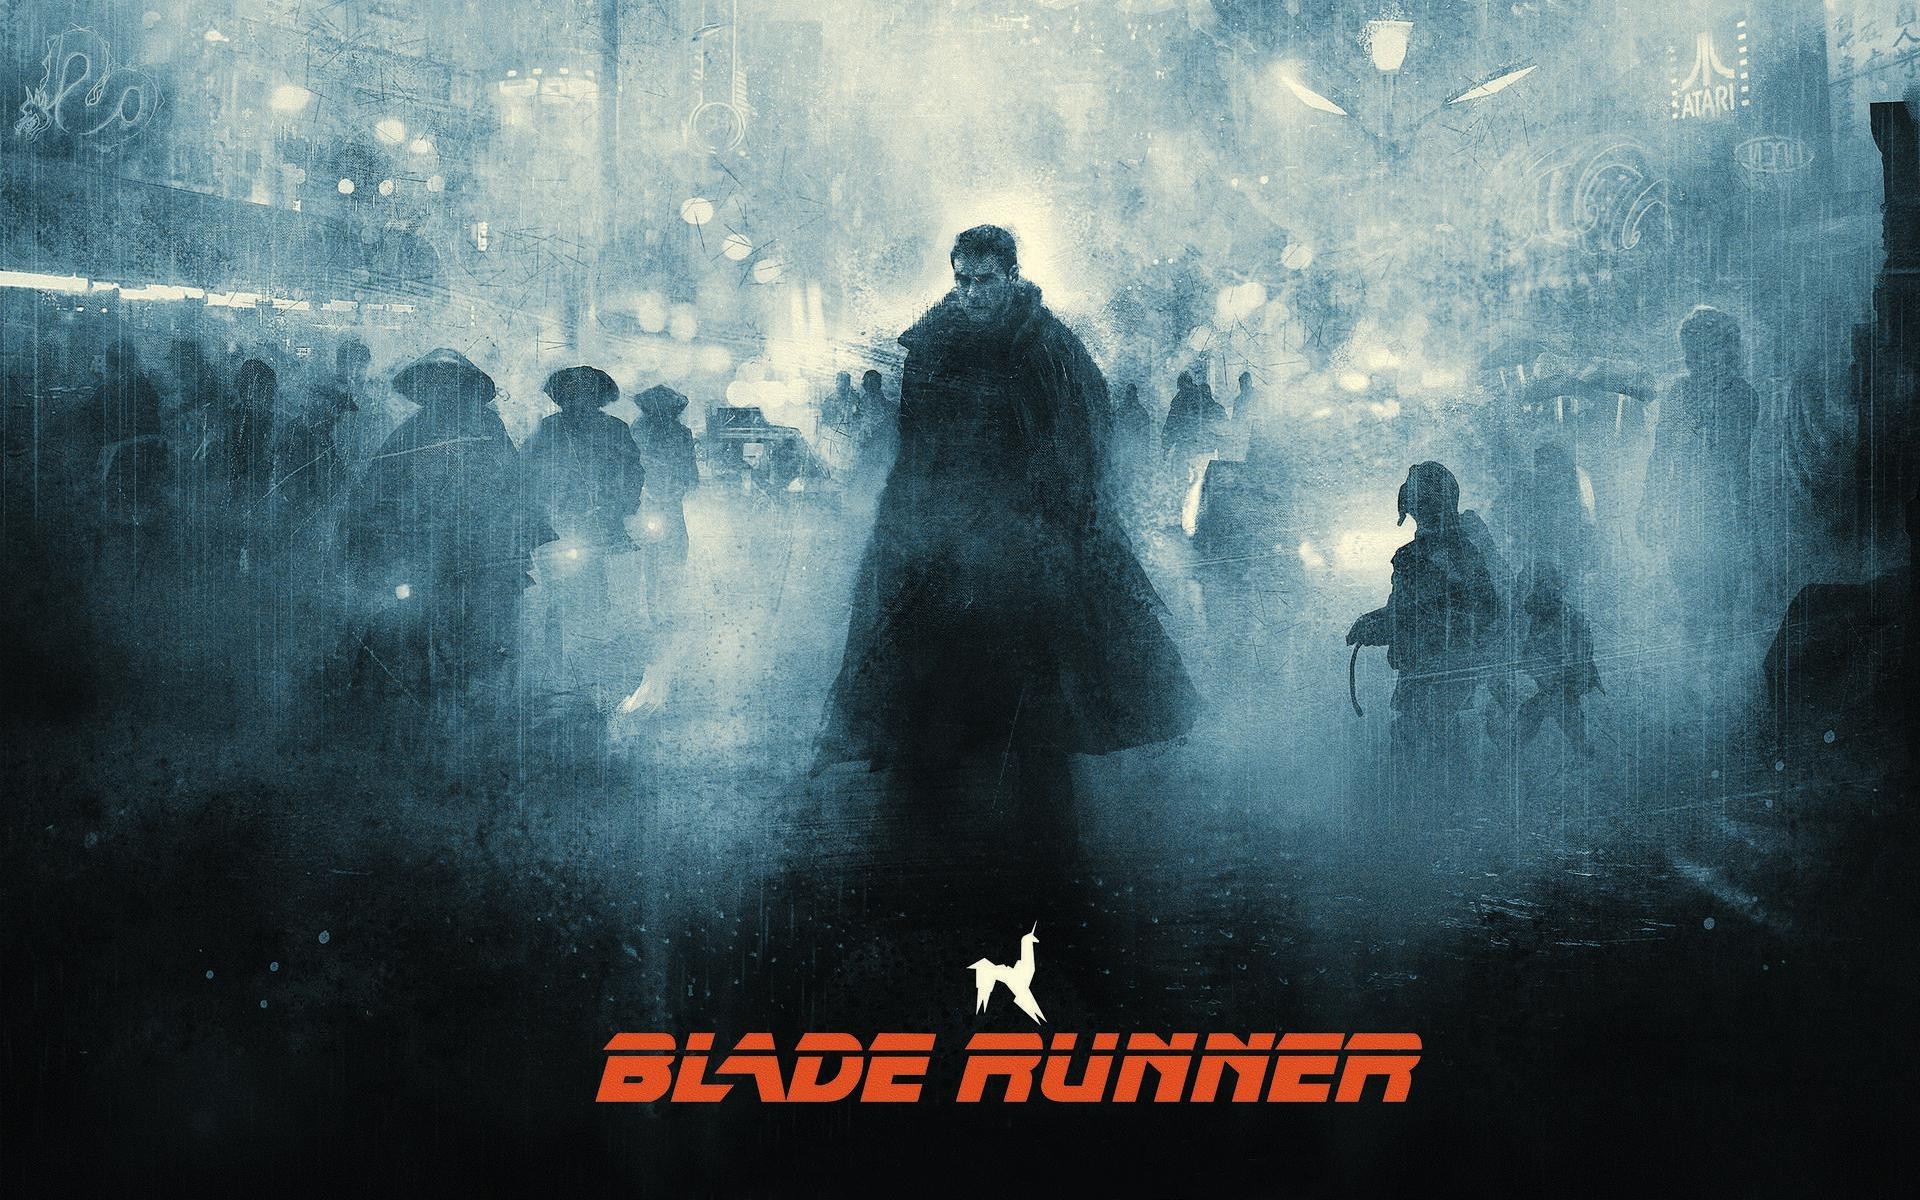 Melhores papéis de parede de Blade Runner para tela do telefone